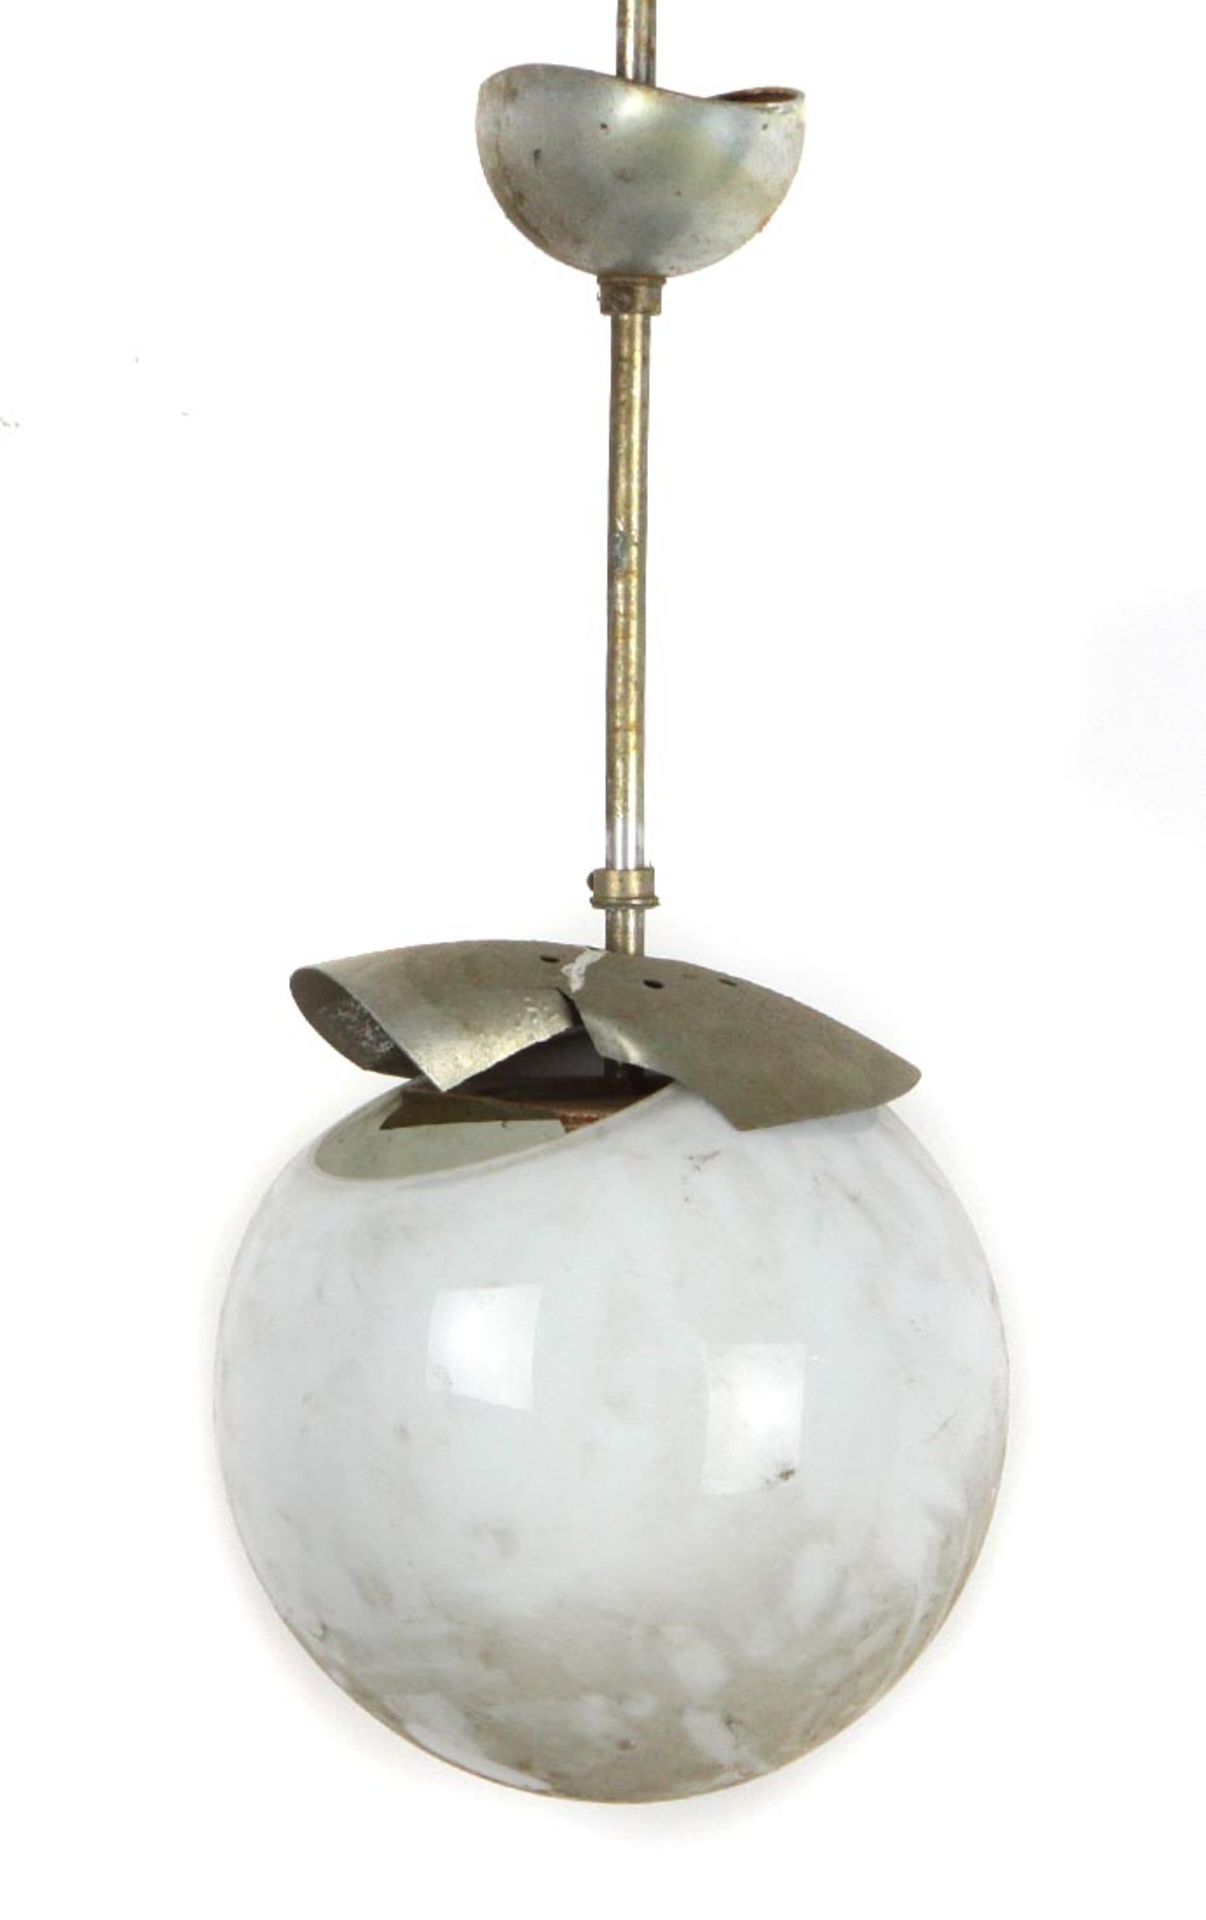 Deckenlampeweiß opaker Kugelschirm, Ø ca. 20 cm, Spindel mit Lampenfassung u. -halterung sowie